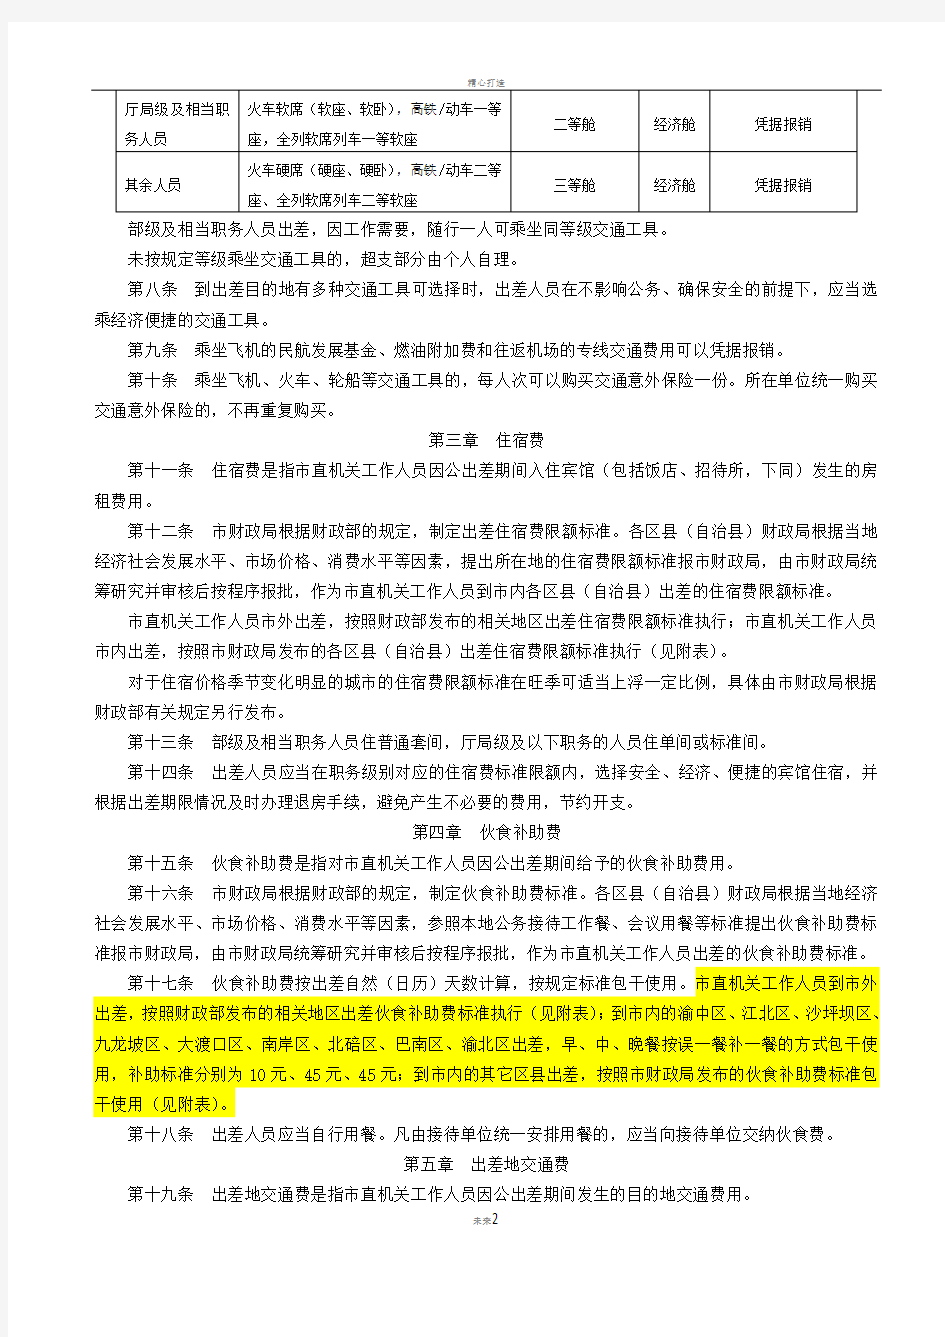 重庆市市直机关差旅费管理办法(渝财行[2014]39号)